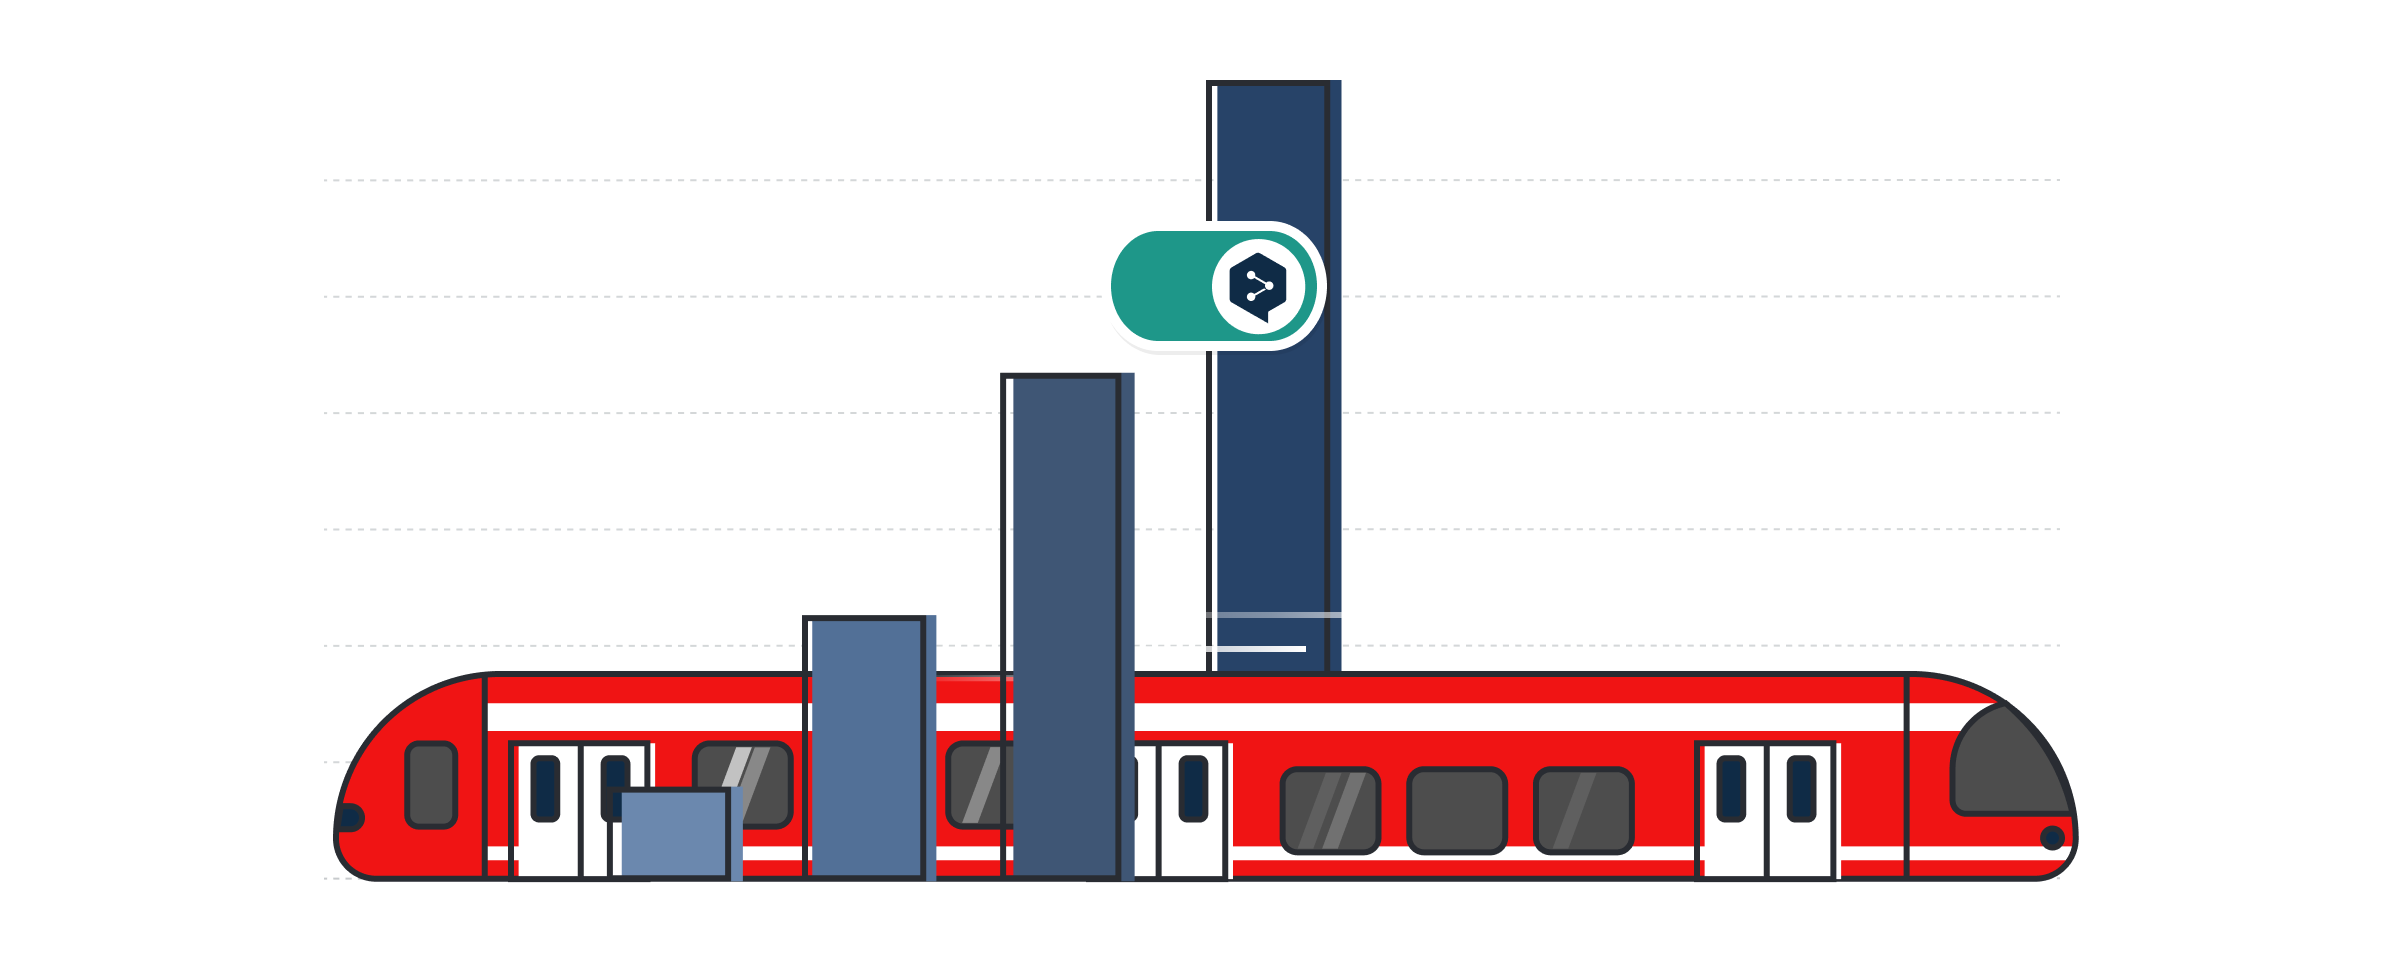 ドイツ鉄道の赤い列車と棒グラフにDeepL Proのロゴが付いたイラスト